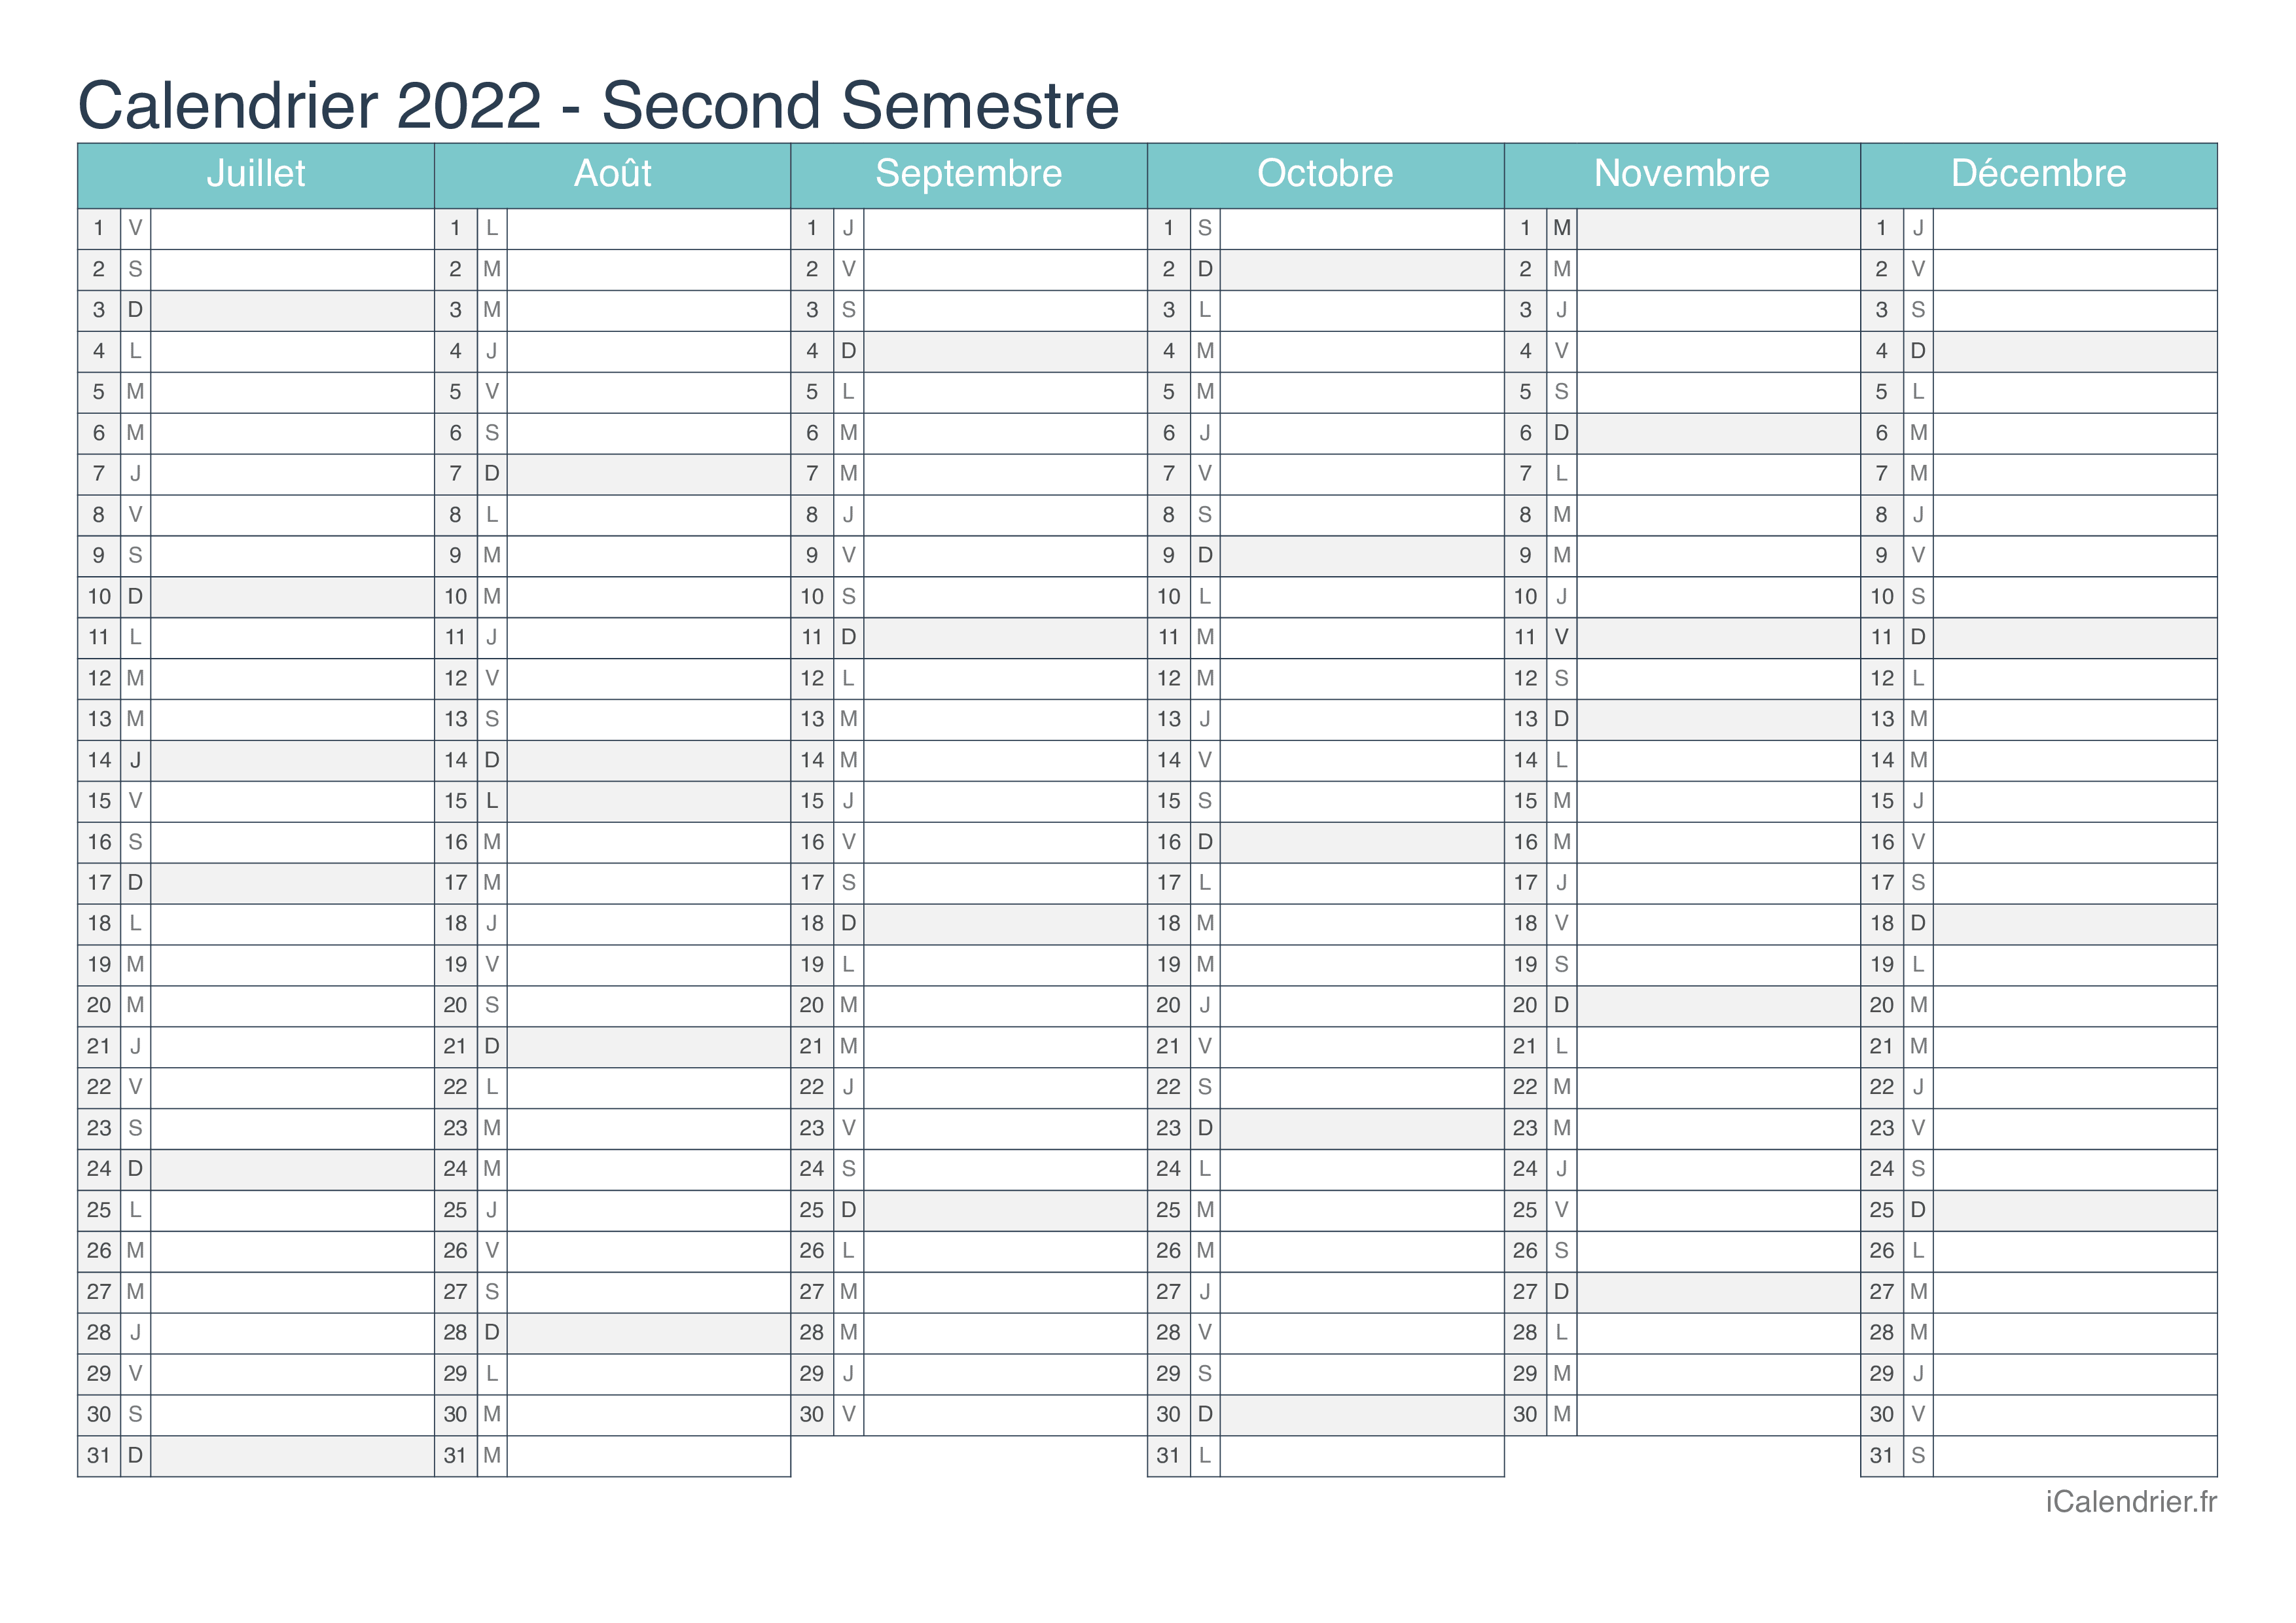 Calendrier 2022 Telecharger Calendrier 2022 à imprimer PDF et Excel   iCalendrier